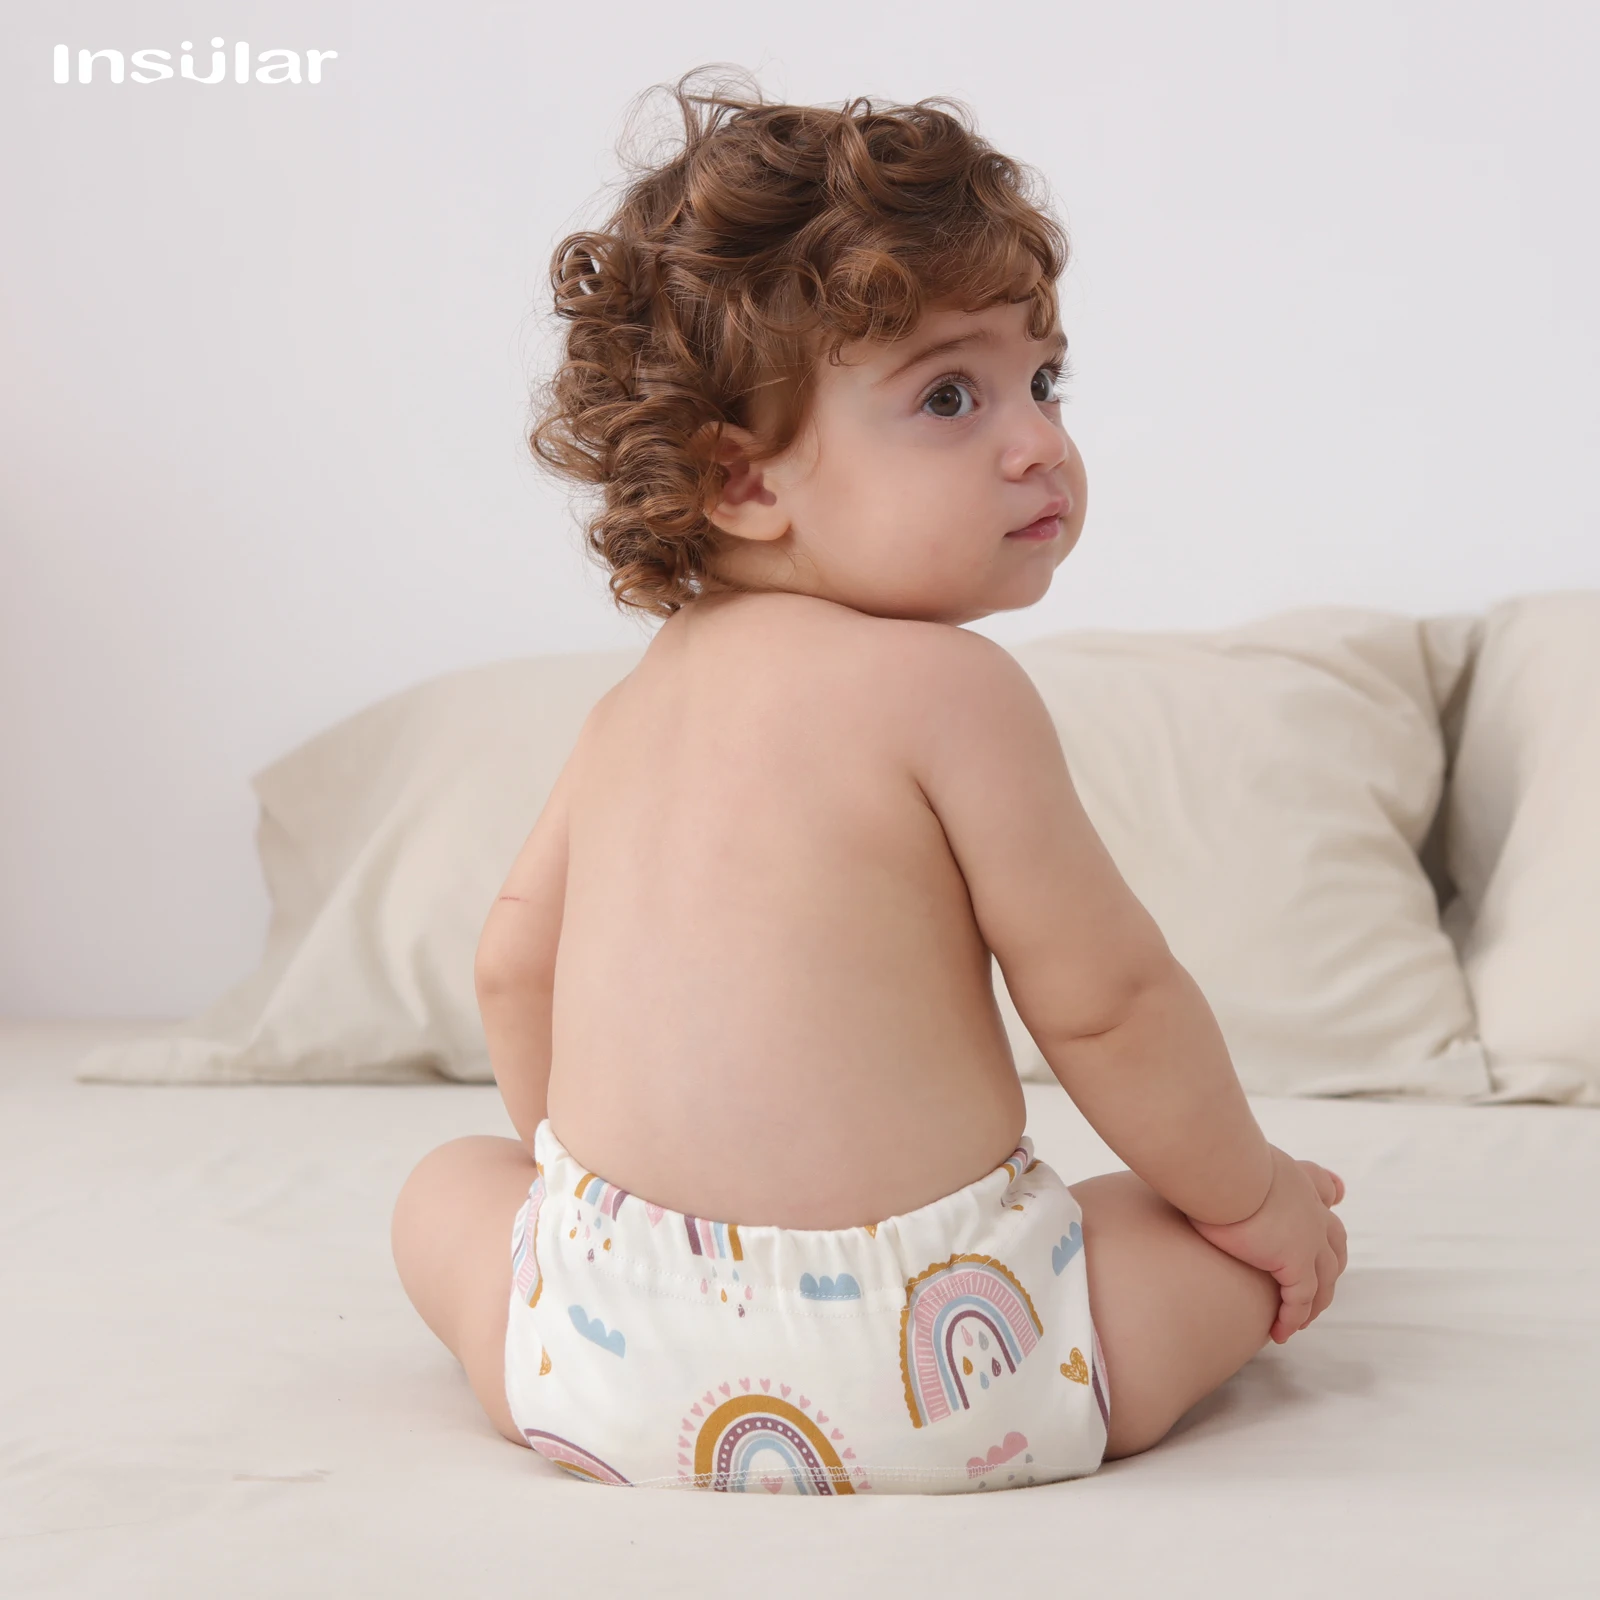 Baby Cotton Training Pants, calcinha impermeável Fraldas de pano Toolder reutilizável Roupa interior do bebê, 6 camadas, 3pcs por lote